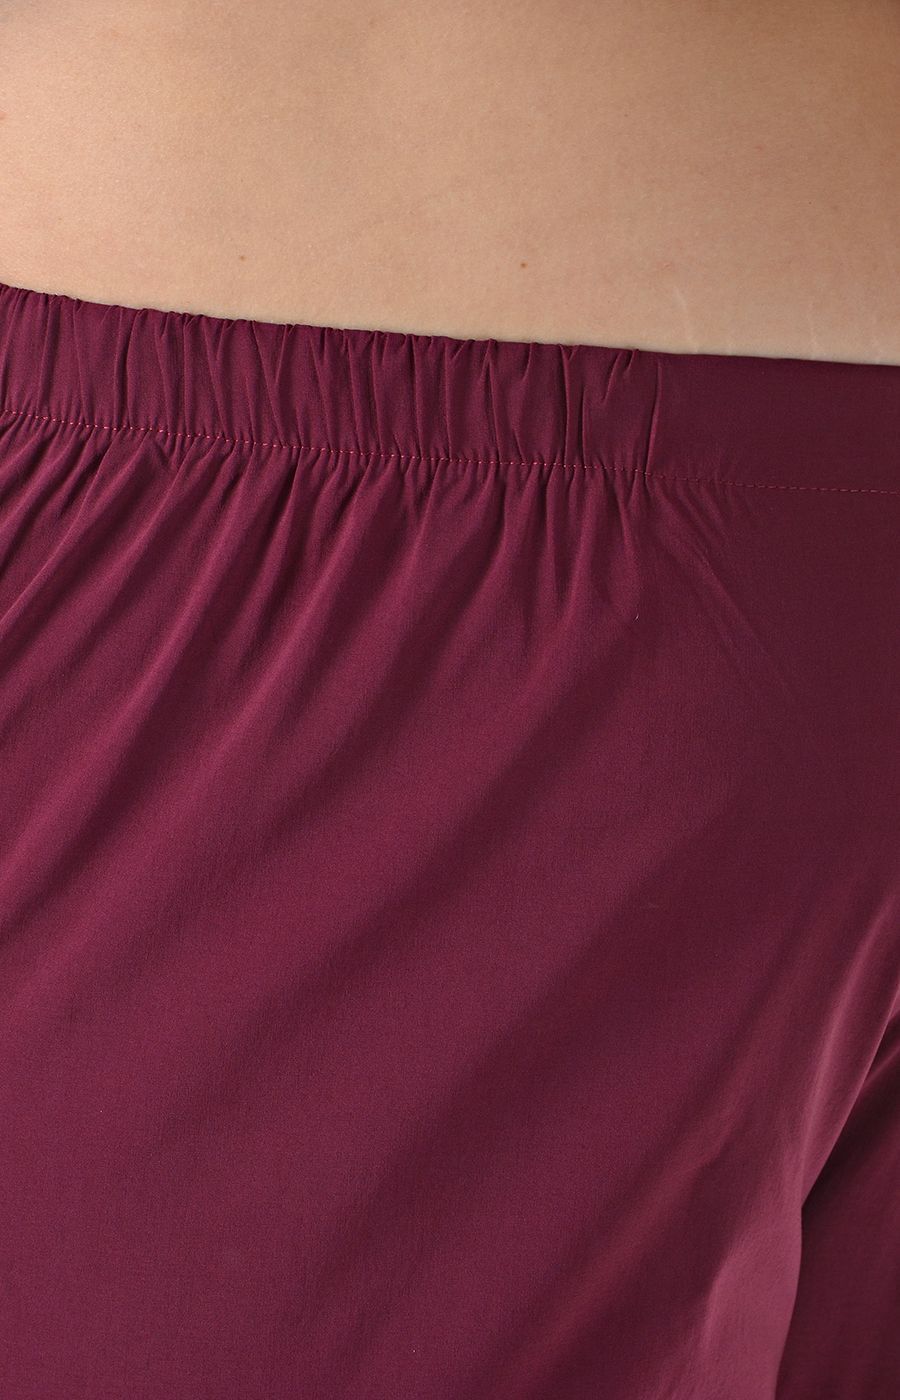 Тонкие бордовые брюки "палаццо" большого размера